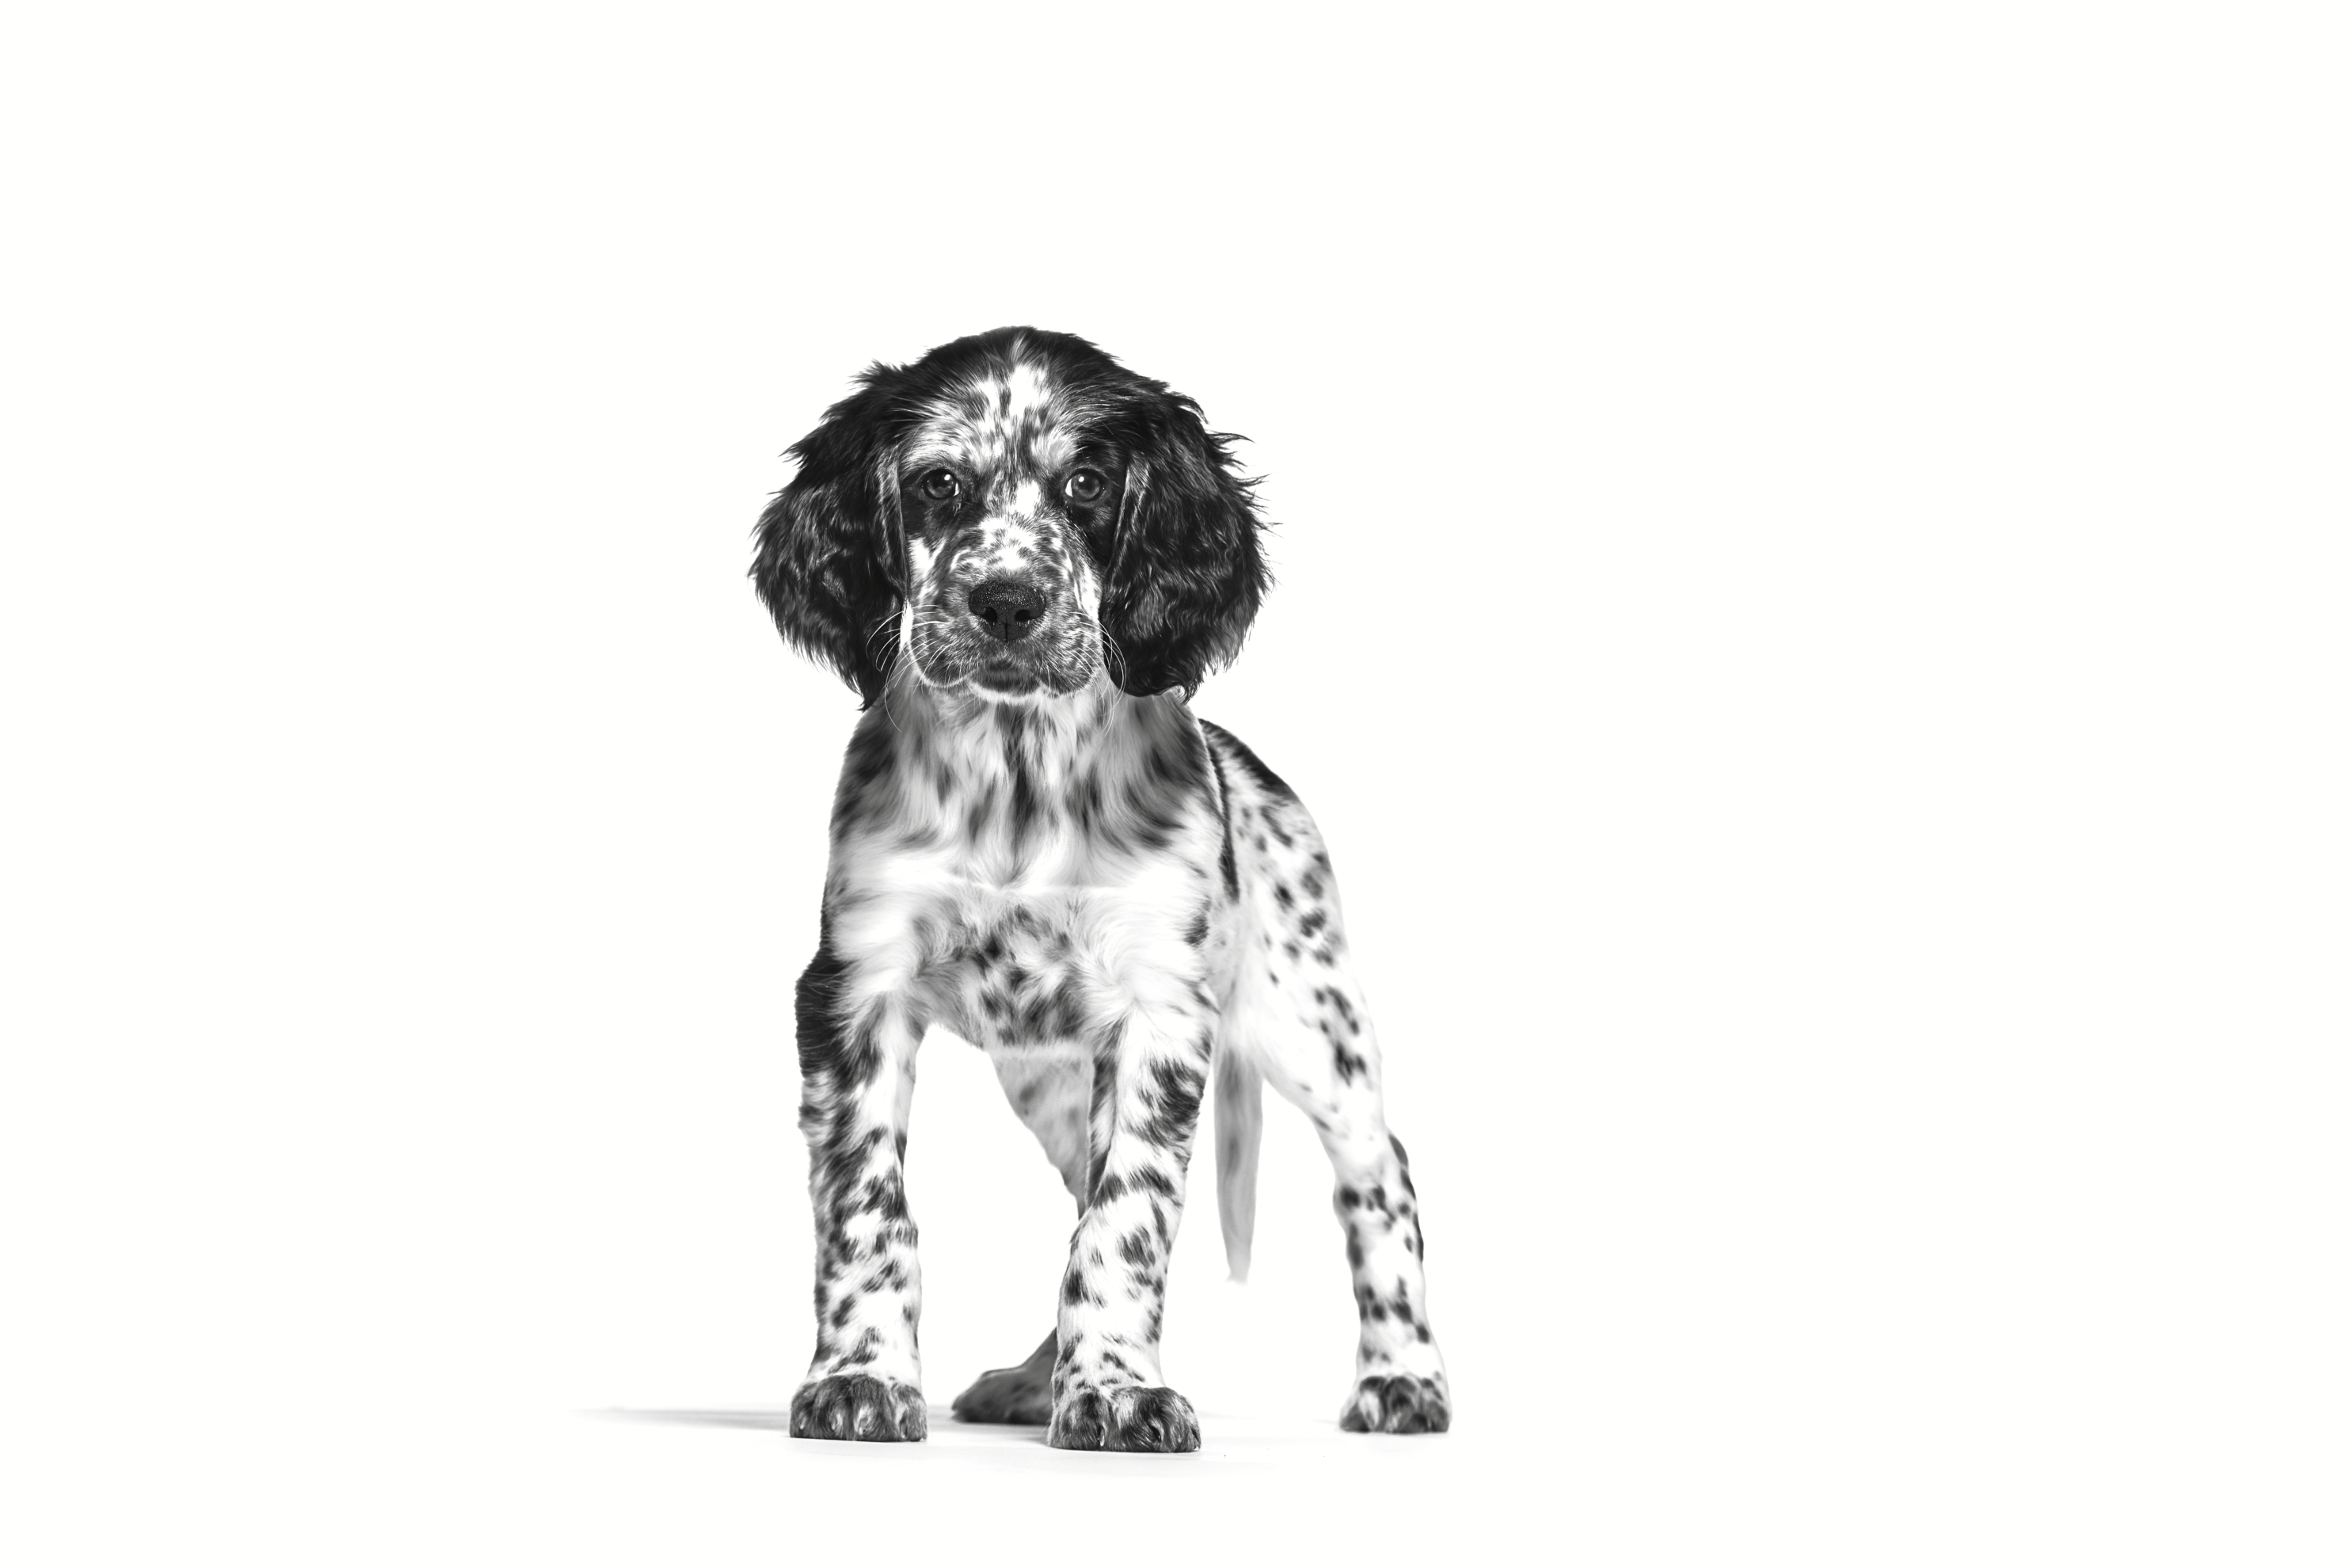 Setter Inglés cachorro en blanco y negro sobre un fondo blanco.